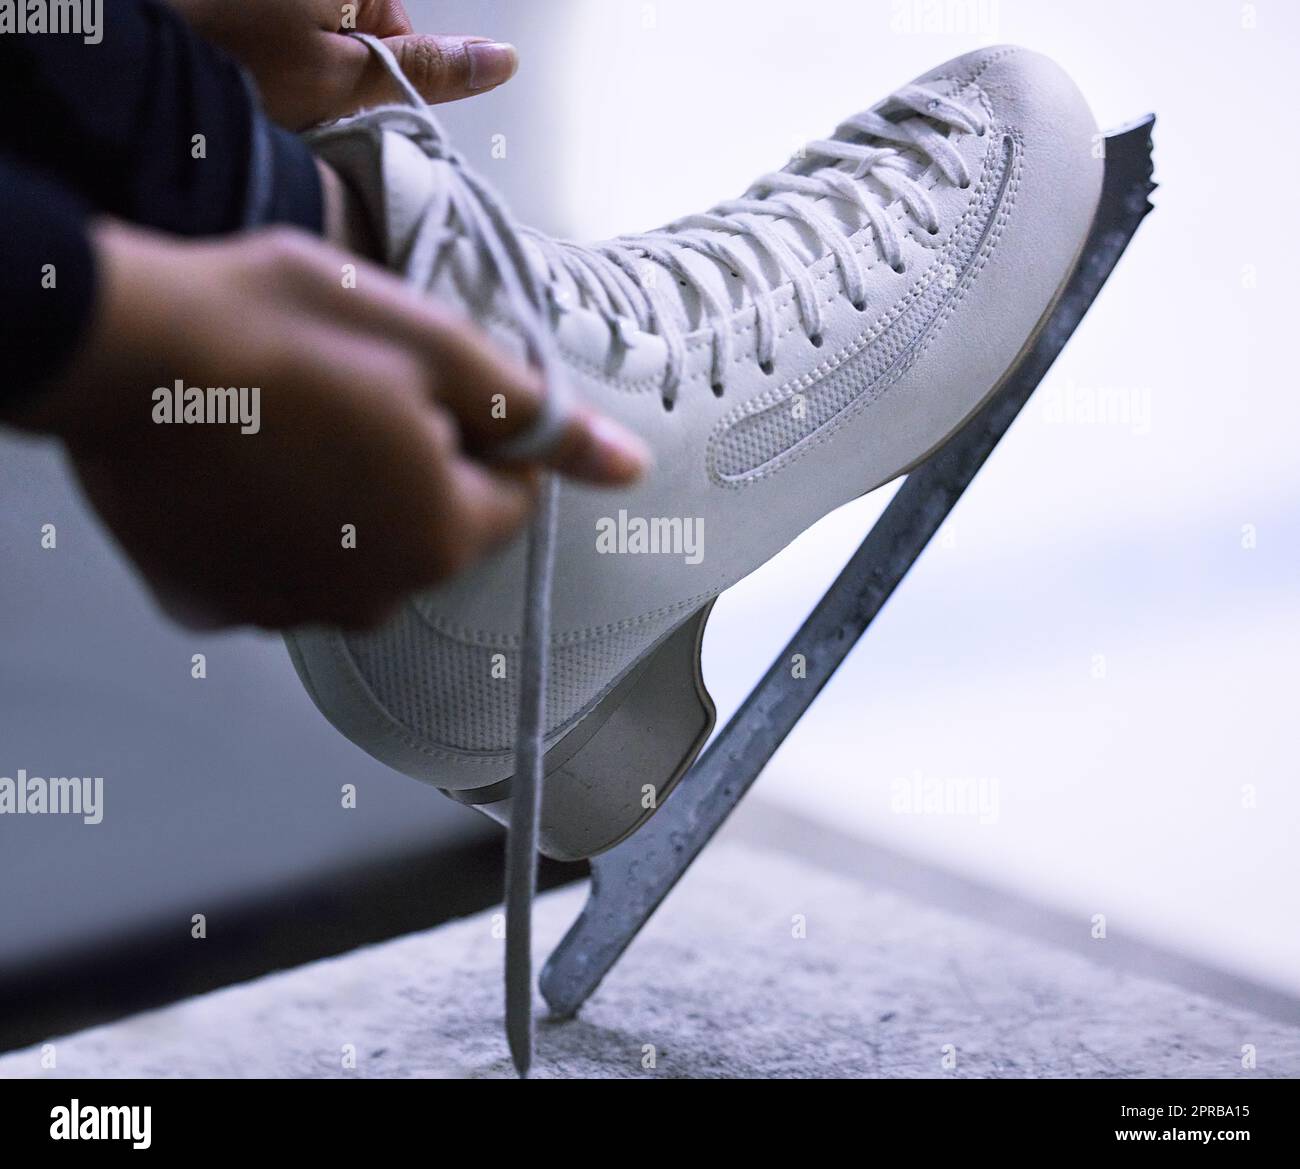 Schlittschuhe über Stilletos. Eine nicht erkennbare Figur Skater Band die Schnürsenkel auf ihre Schlittschuhe. Stockfoto